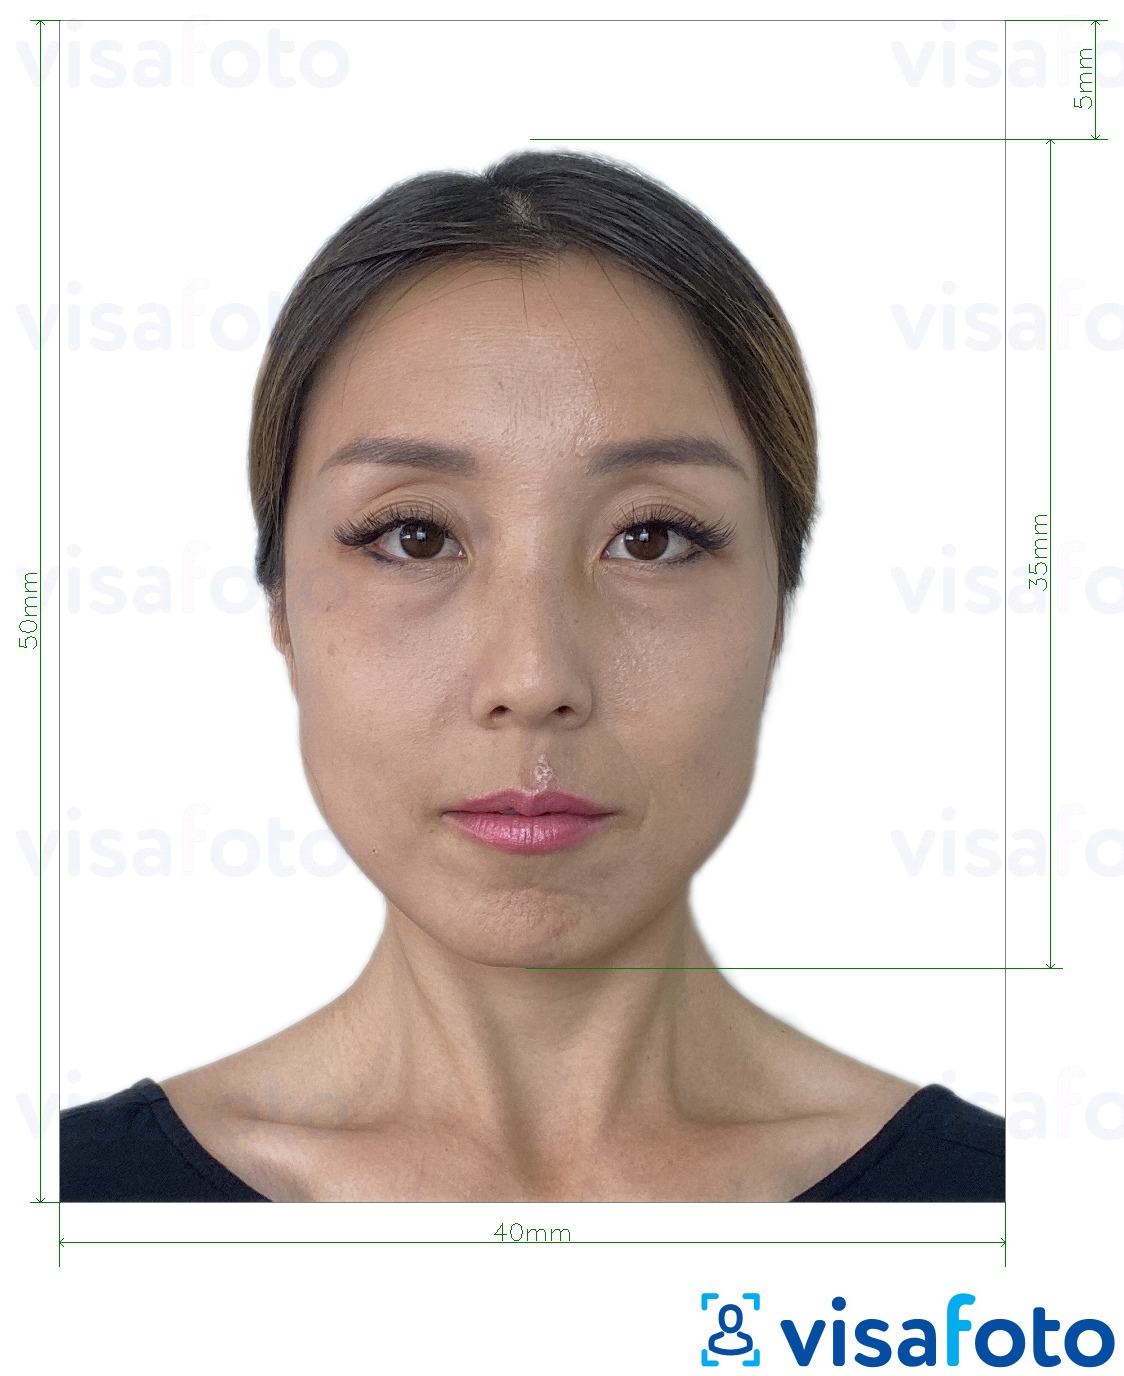 Esempio di foto per Hong Kong Passaporto 40x50 mm (4x5 cm) con specifiche delle dimensioni esatte